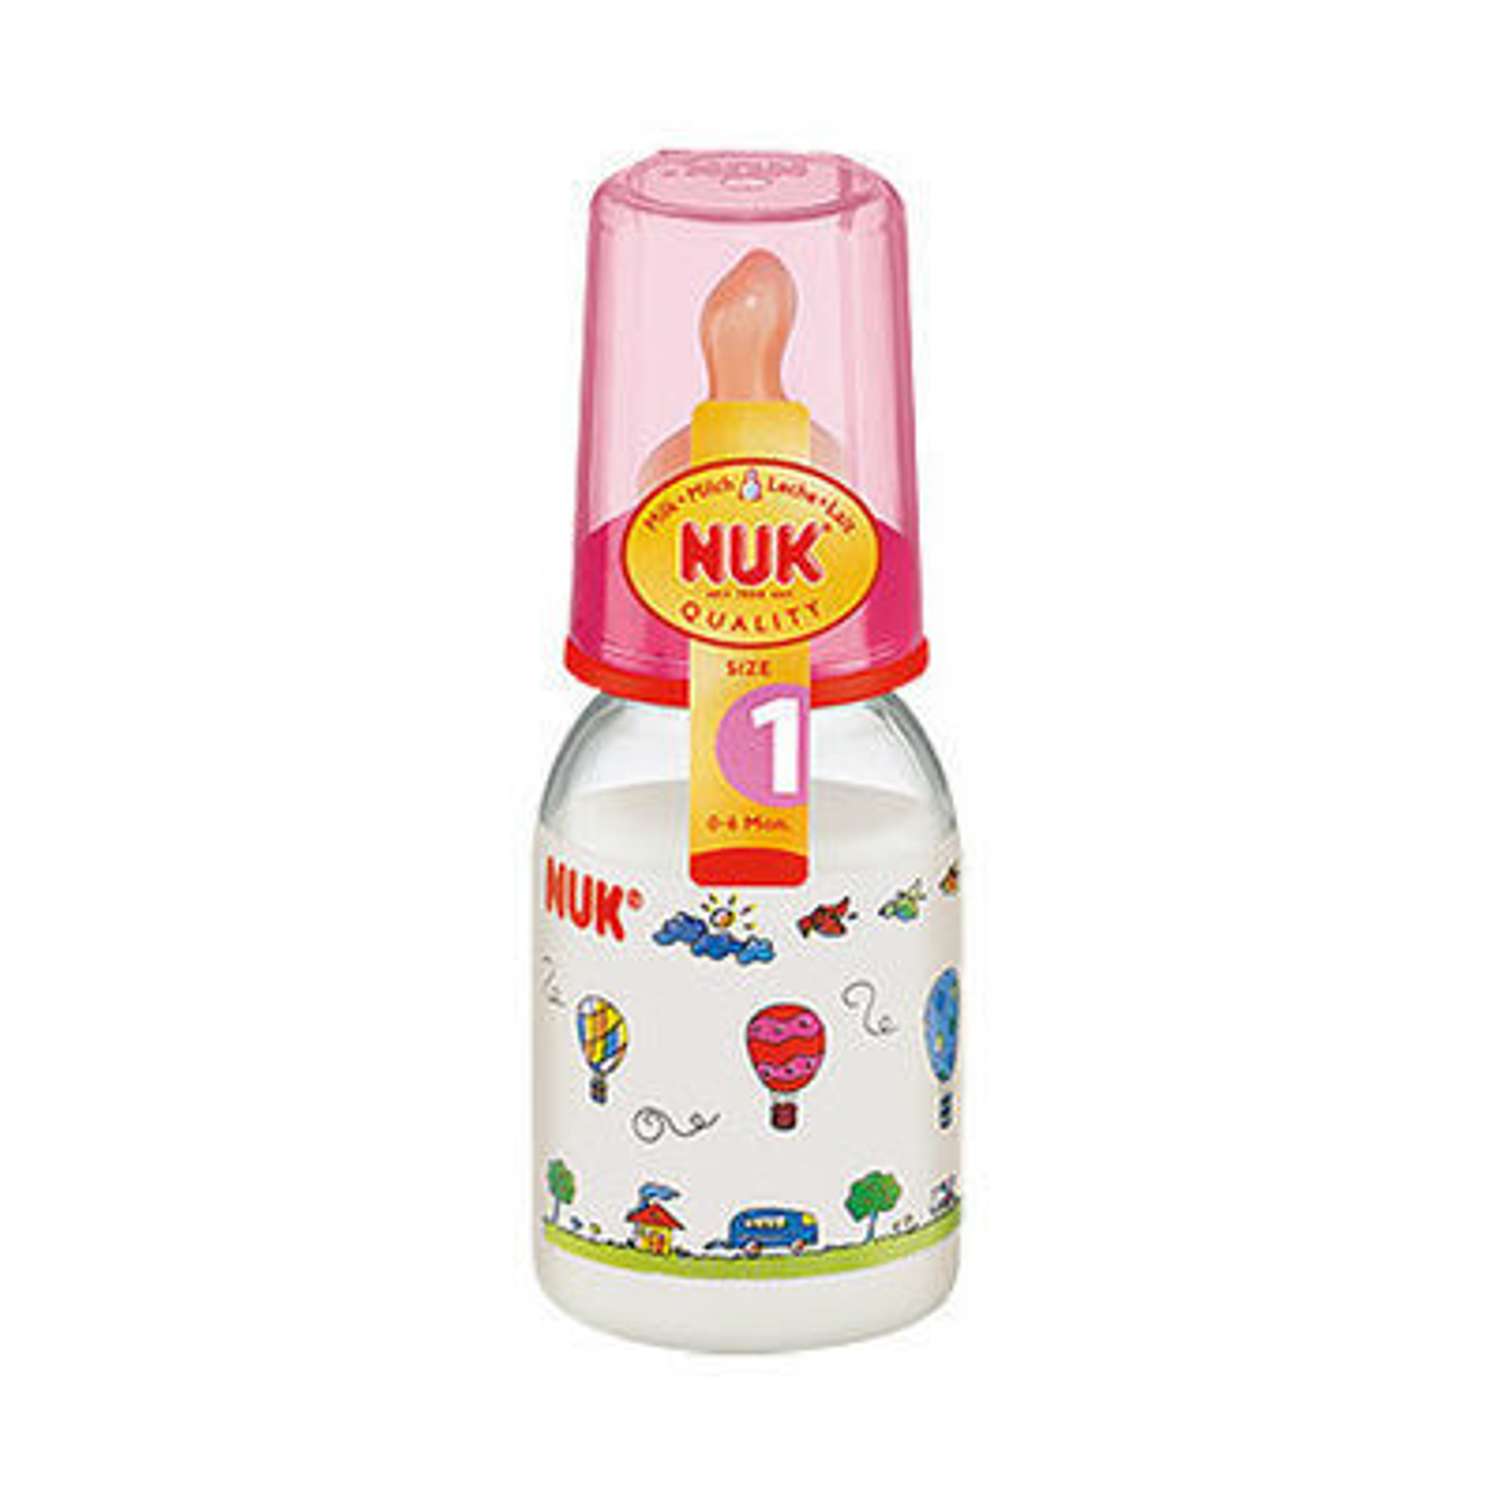 Бутылка Nuk 110 мл с латексной соской размер 1 в ассортименте - фото 2